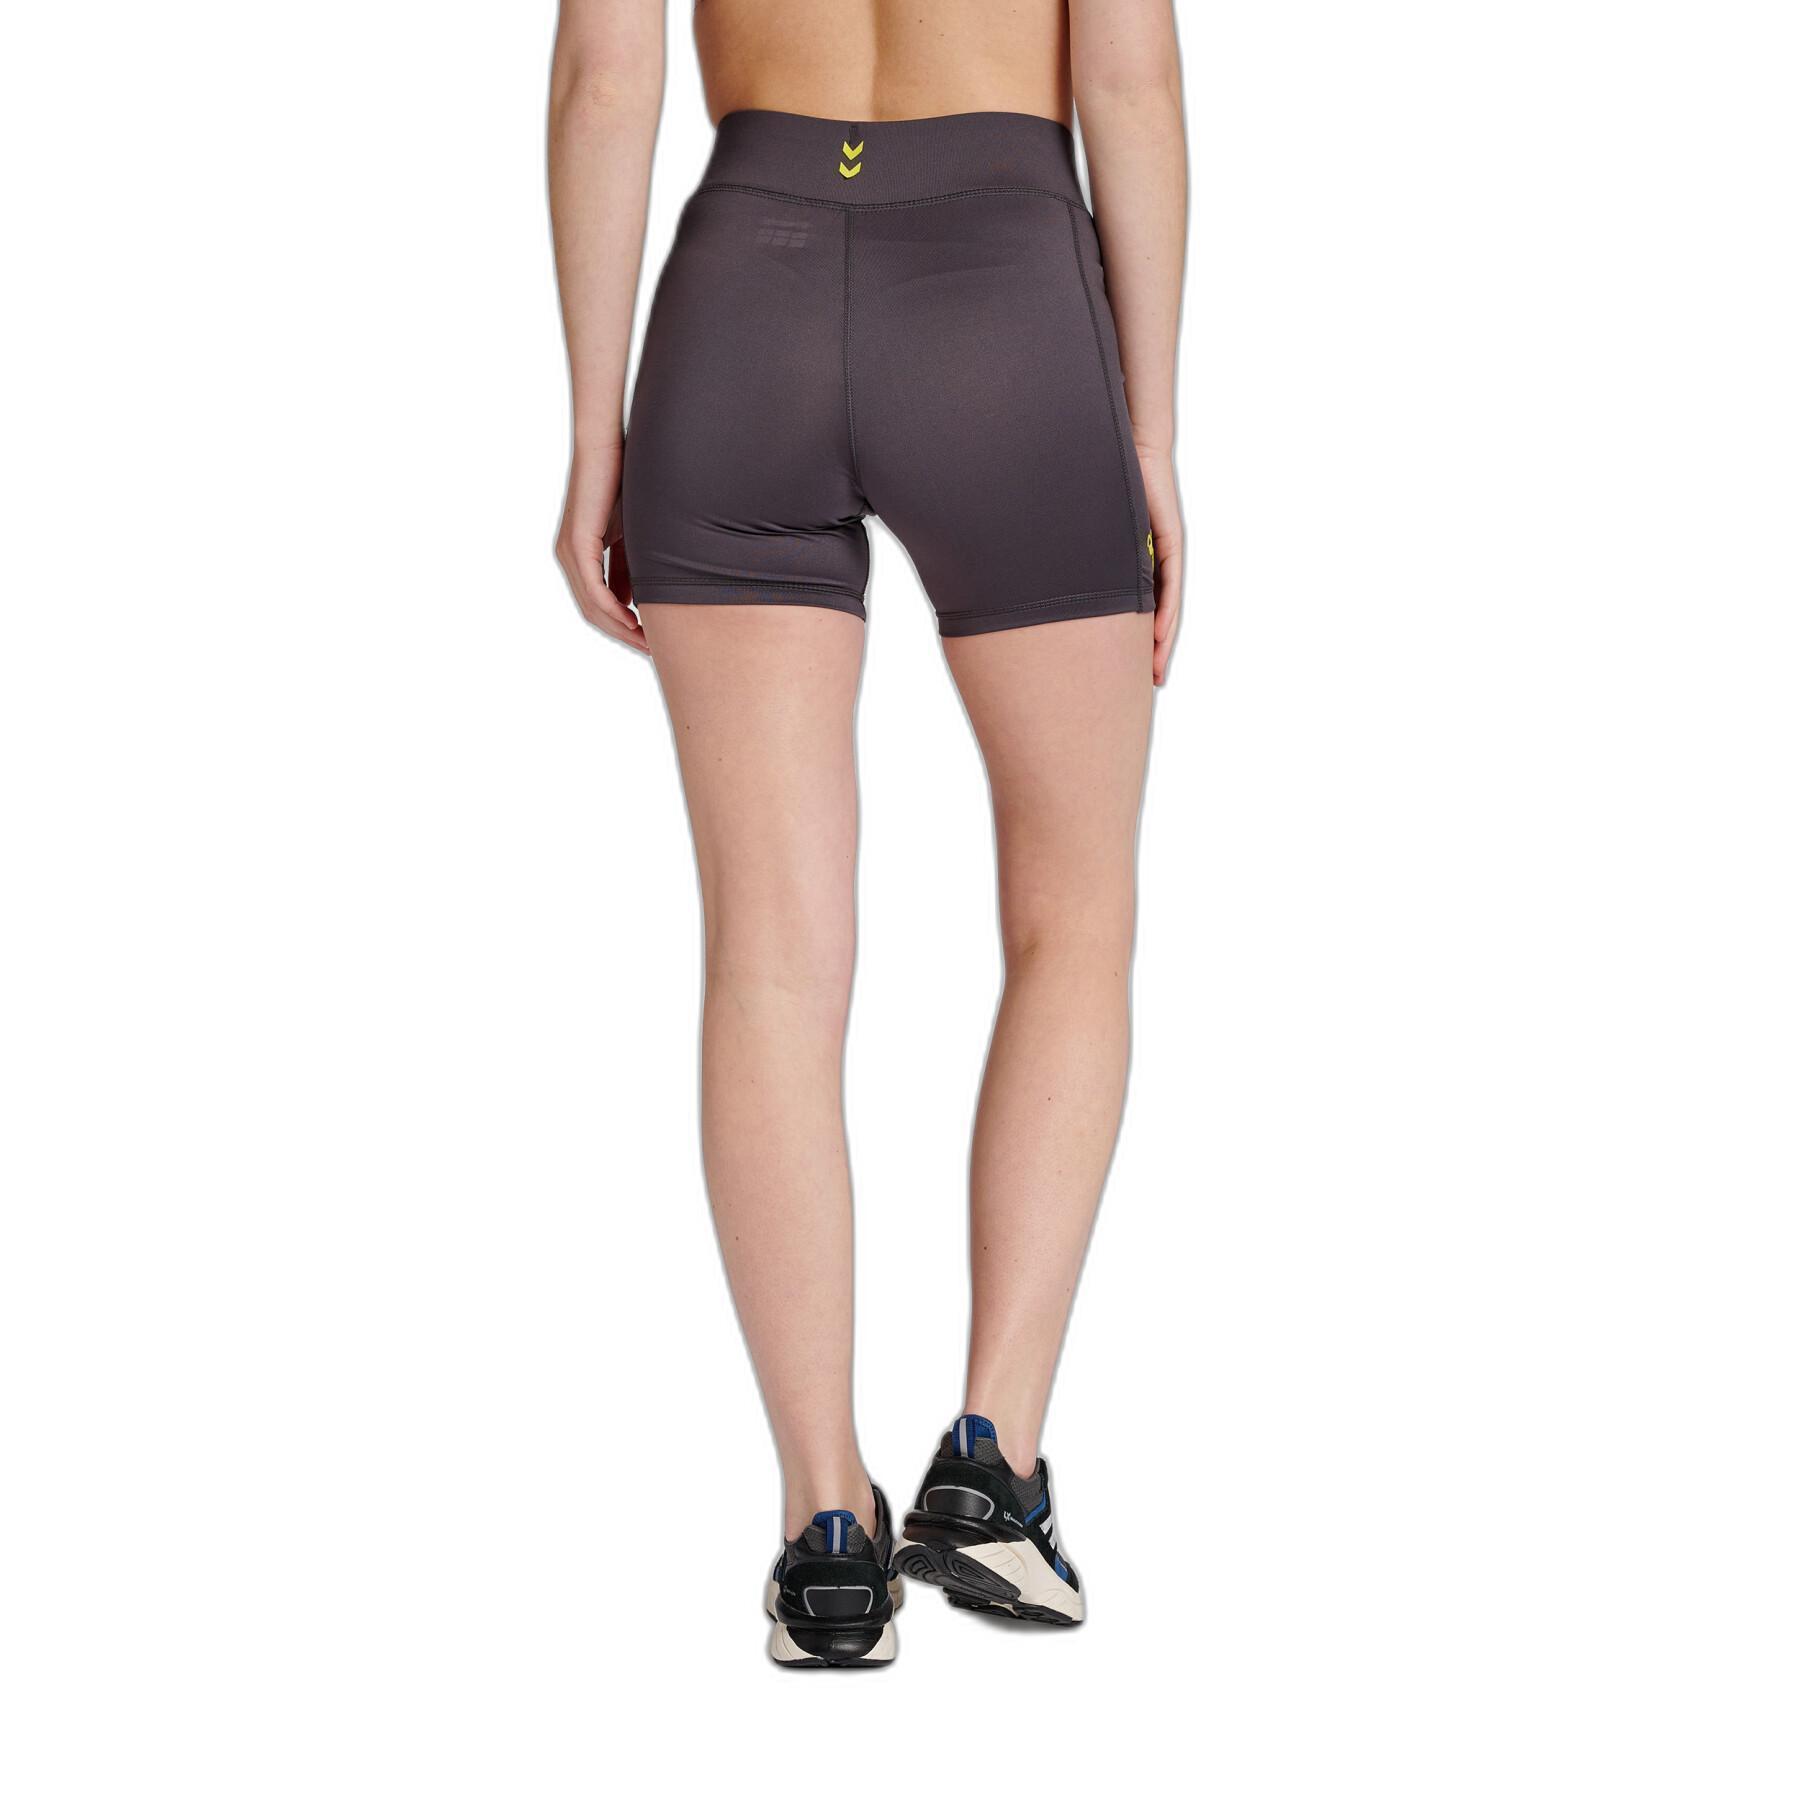 Women's high waist training shorts Hummel GG 12